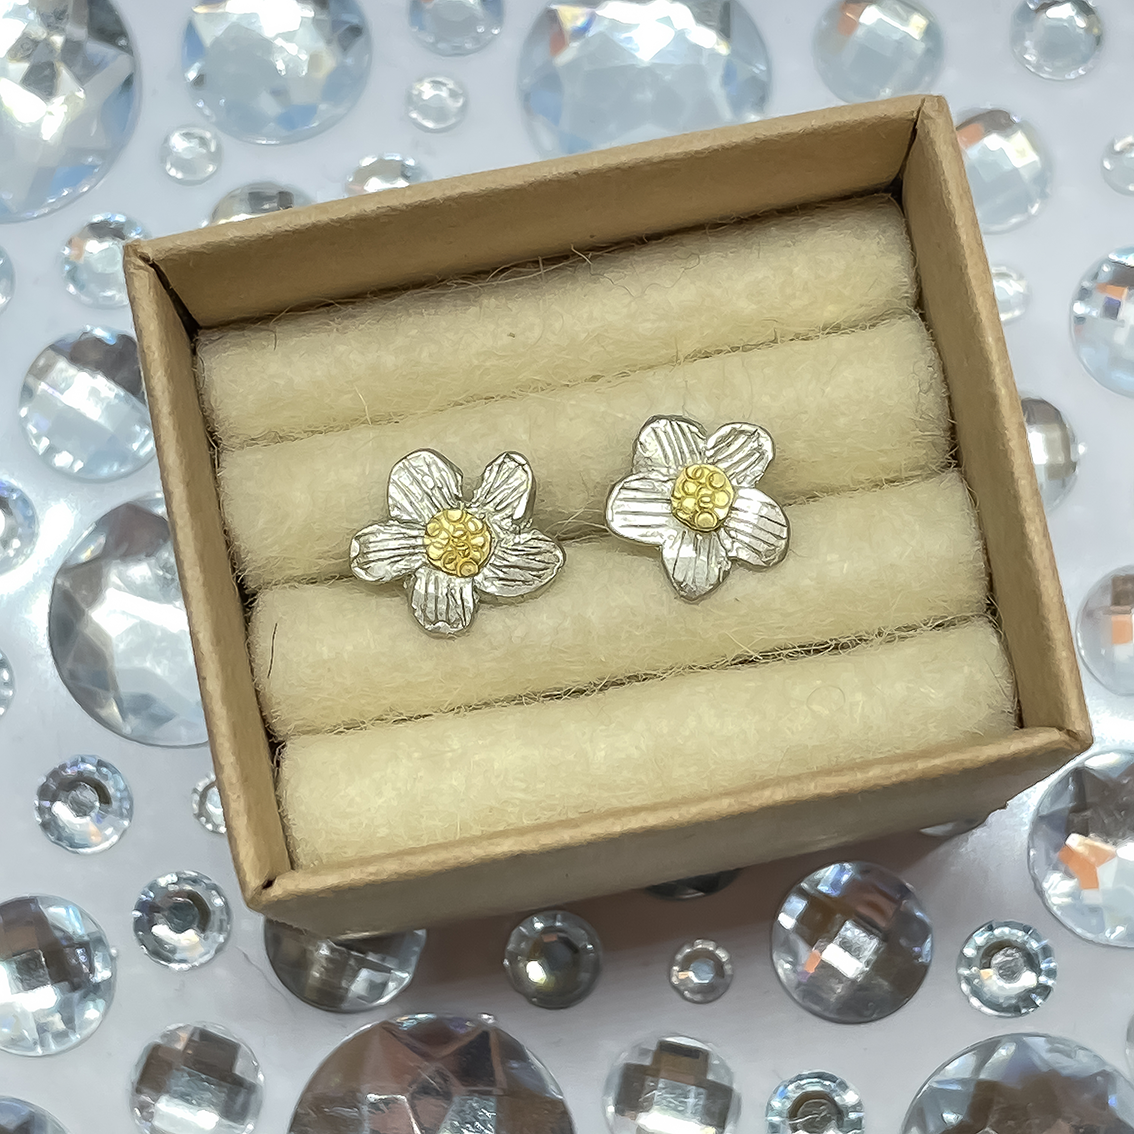 Alpine Daisy Flower Stud Earrings | Sterling Silver + 18ct Gold